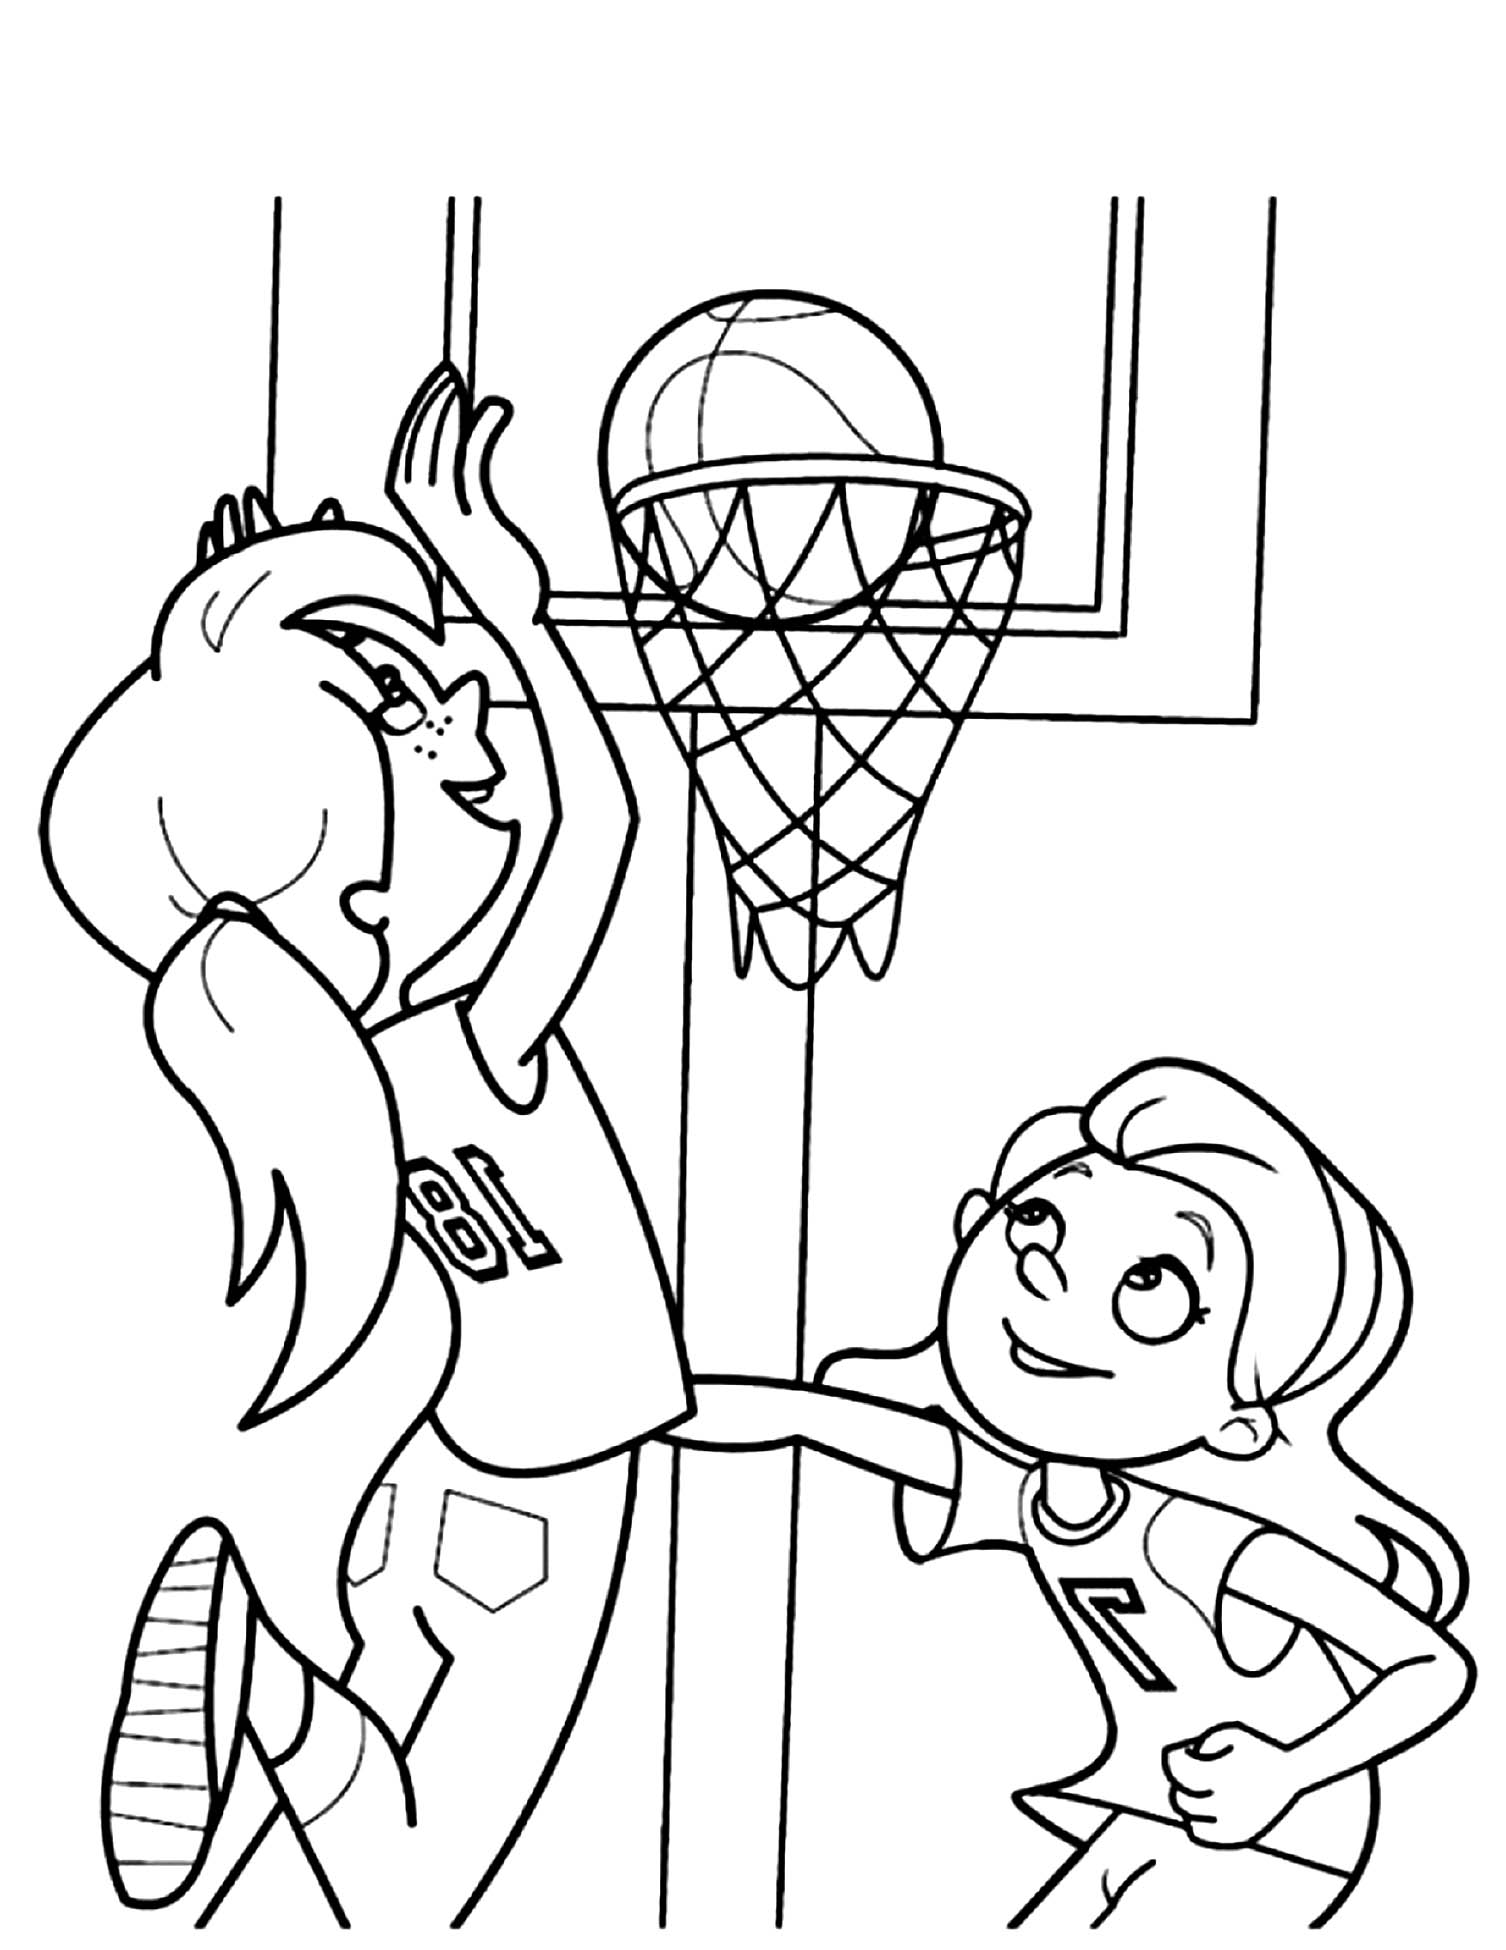 basketball coloring pages basketball coloring pages 4 educative printable pages coloring basketball